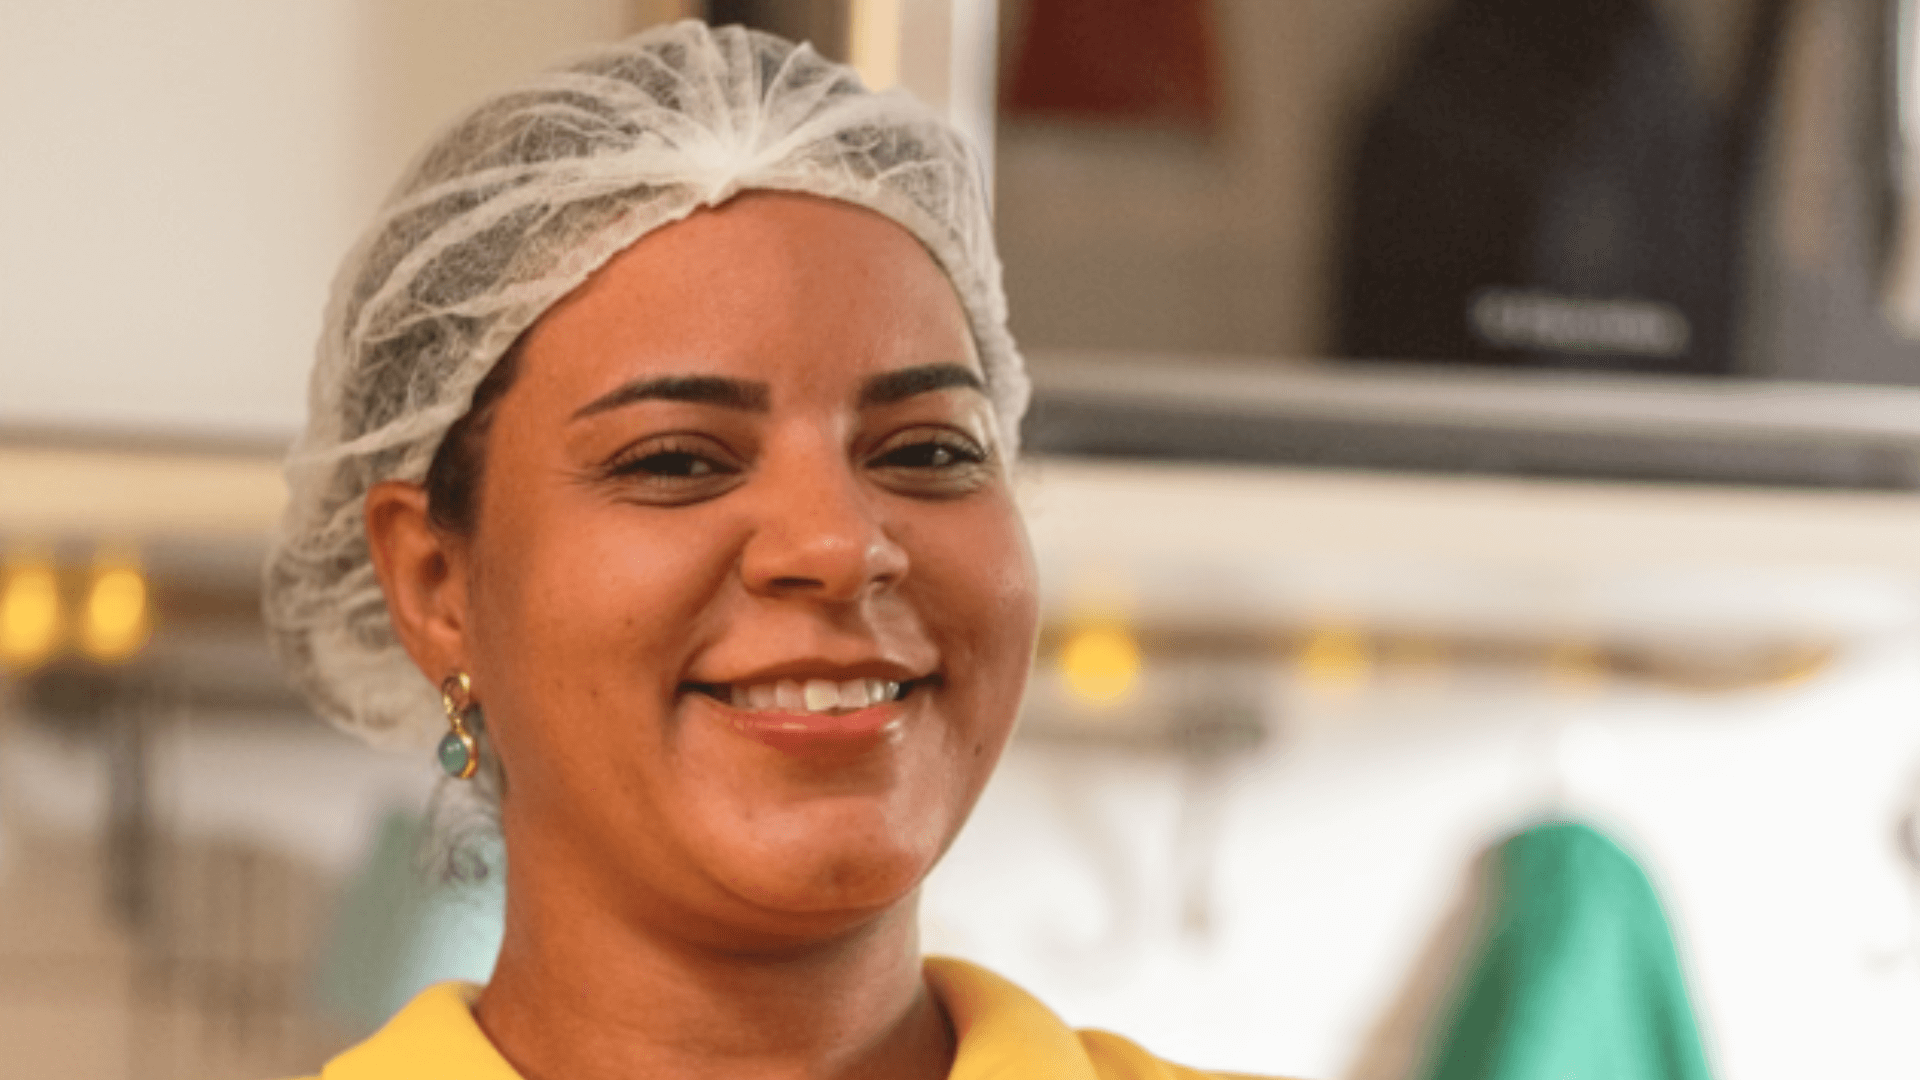 Kuat e Aliança empreendedora capacitam mulheres no projeto ‘Meu Negócio é Meu País’